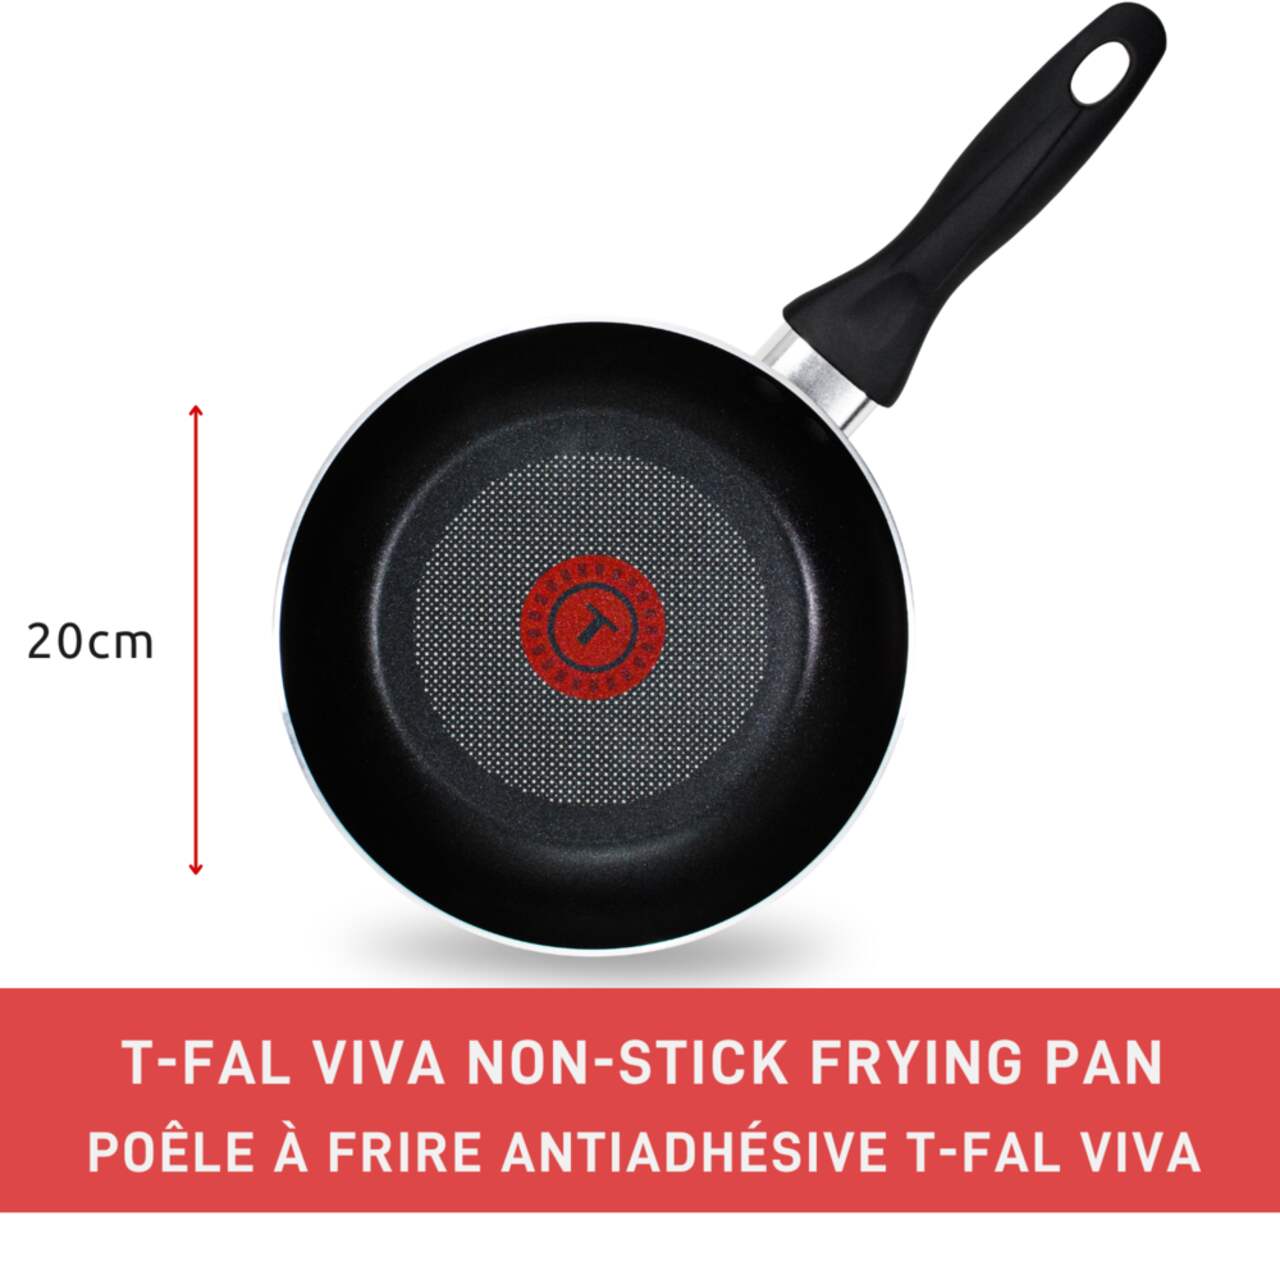 T-fal Viva Aluminum Frying Pan Non-stick, Dishwasher & Oven Safe